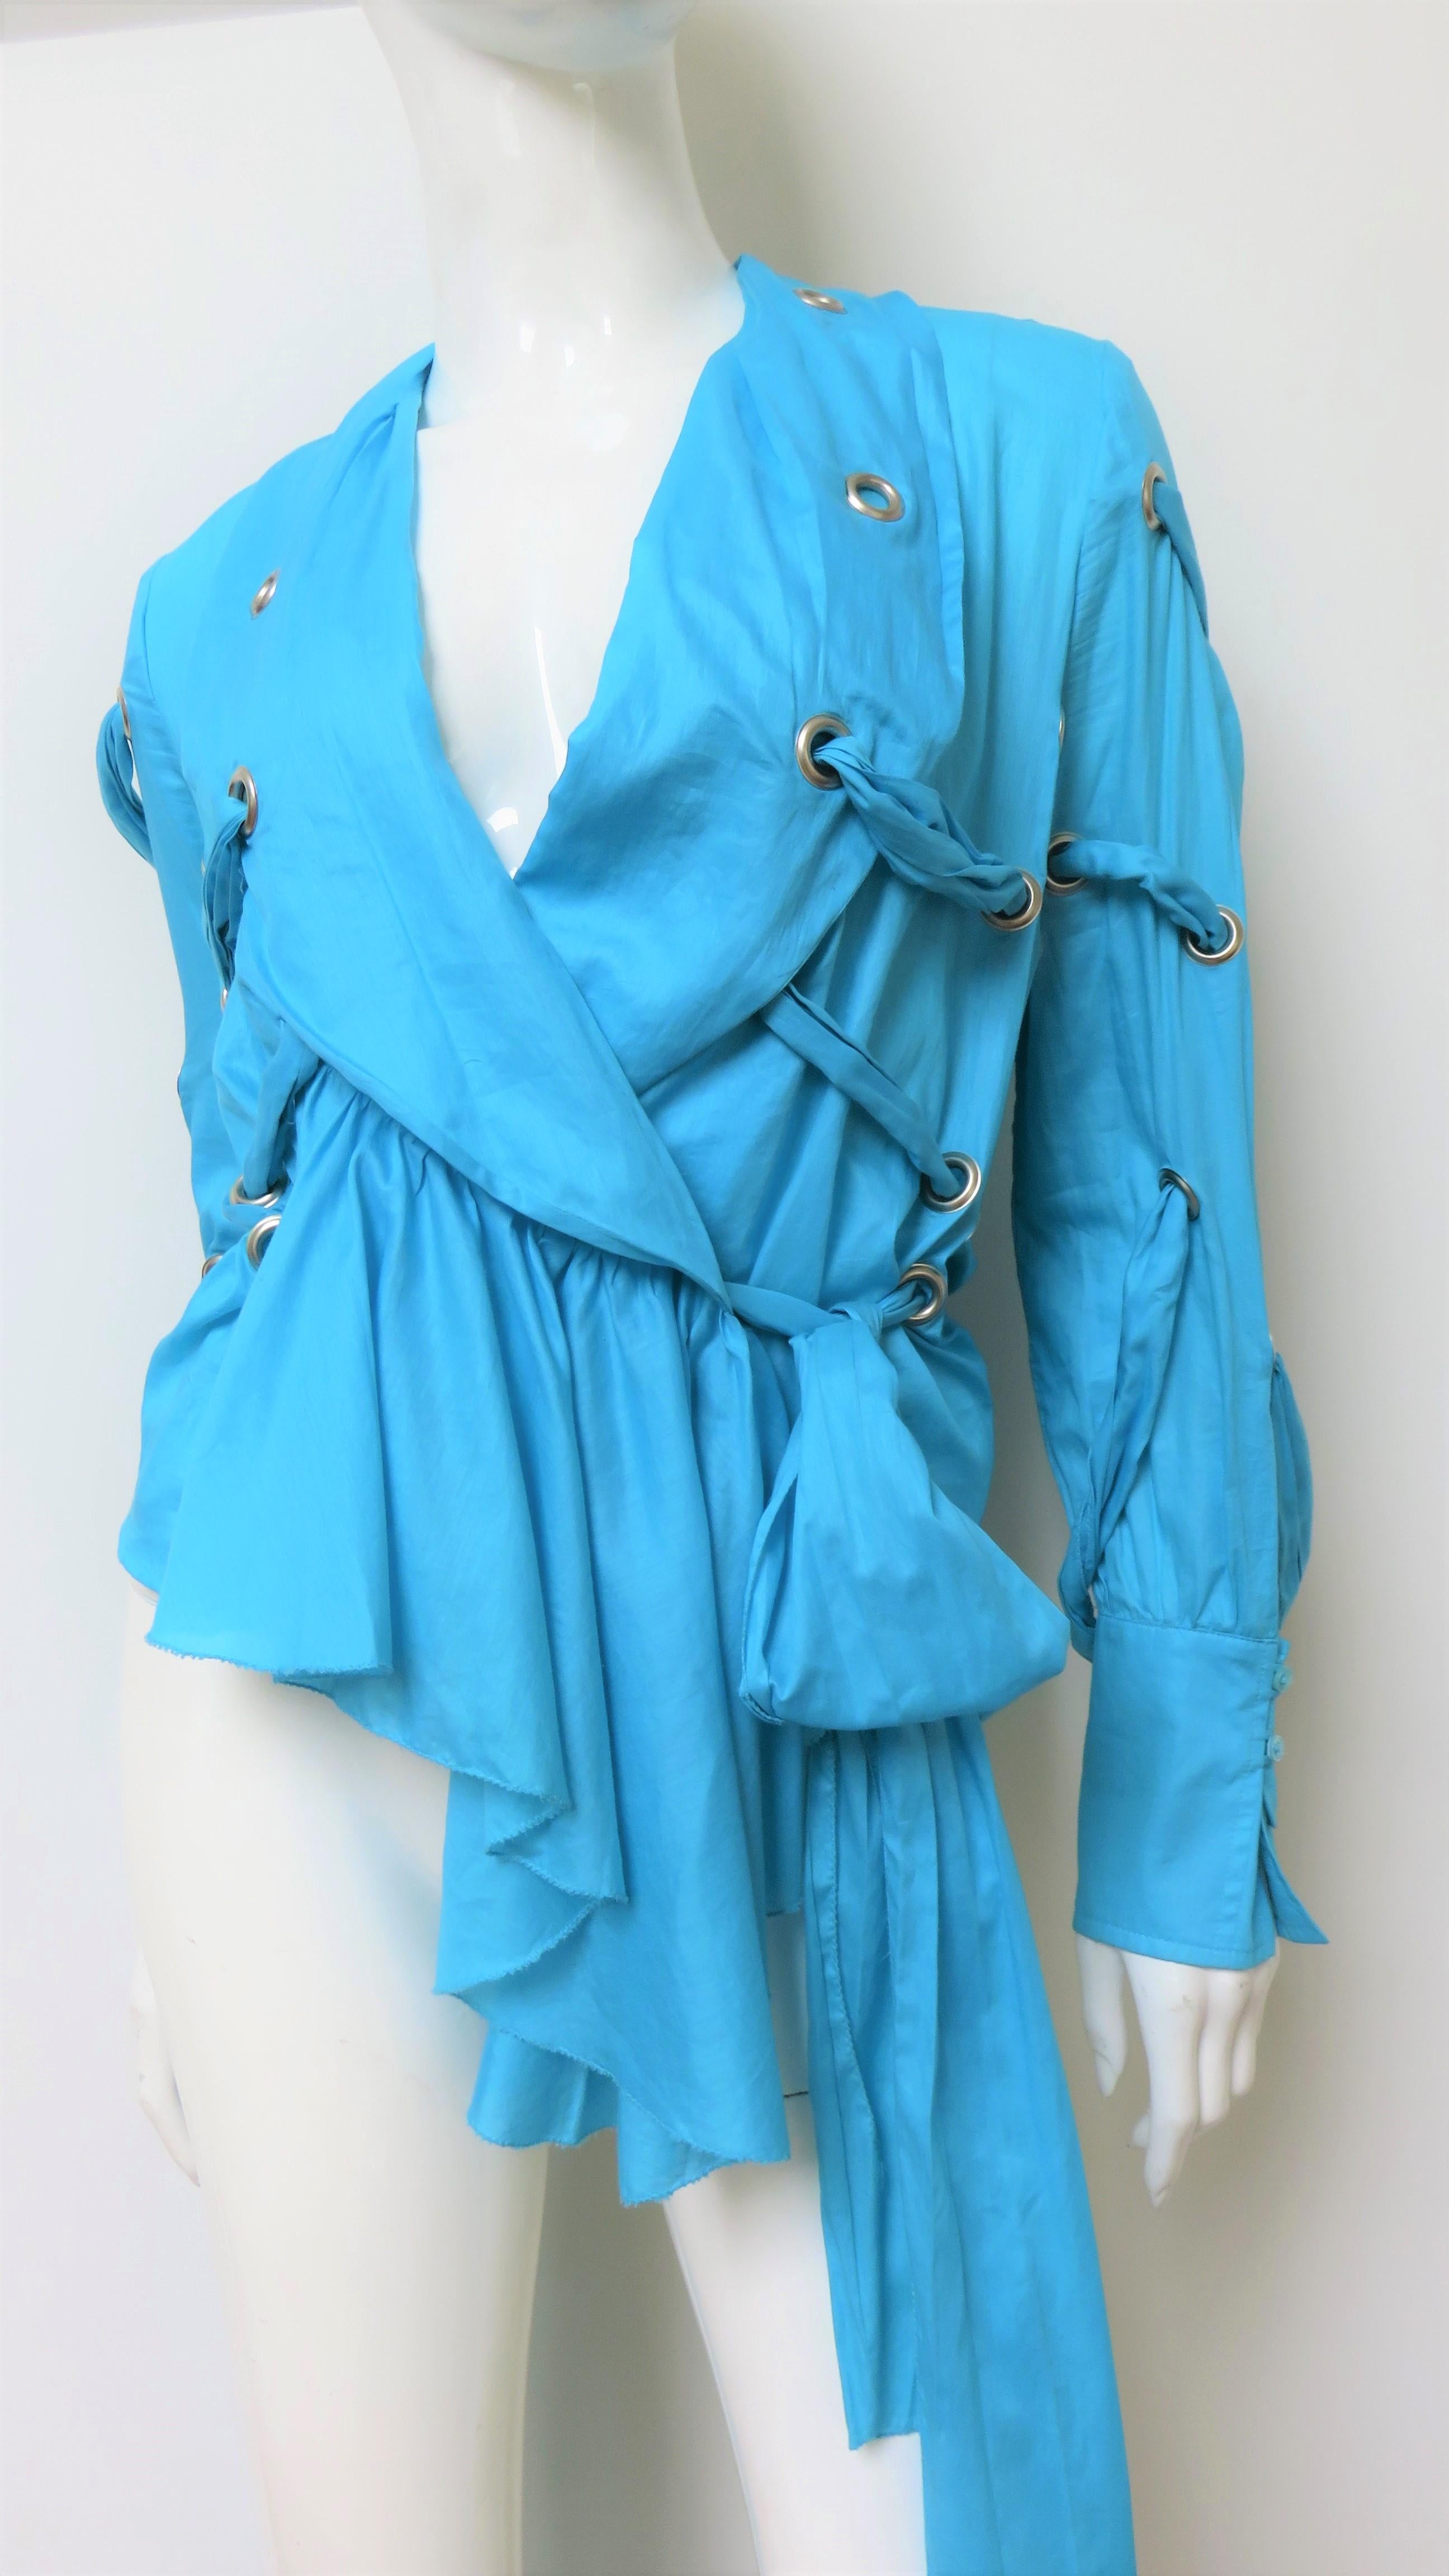 Ein fabelhaftes hellblaues Hemd, Top, Bluse aus feiner Baumwolle von Antonio Berardi.  Es hat einen Schalkragen, passende Knopfmanschetten aus Perlmutt und einen asymmetrischen Saum, der vorne länger ist. Das Hemd hat Ösen an verschiedenen Stellen